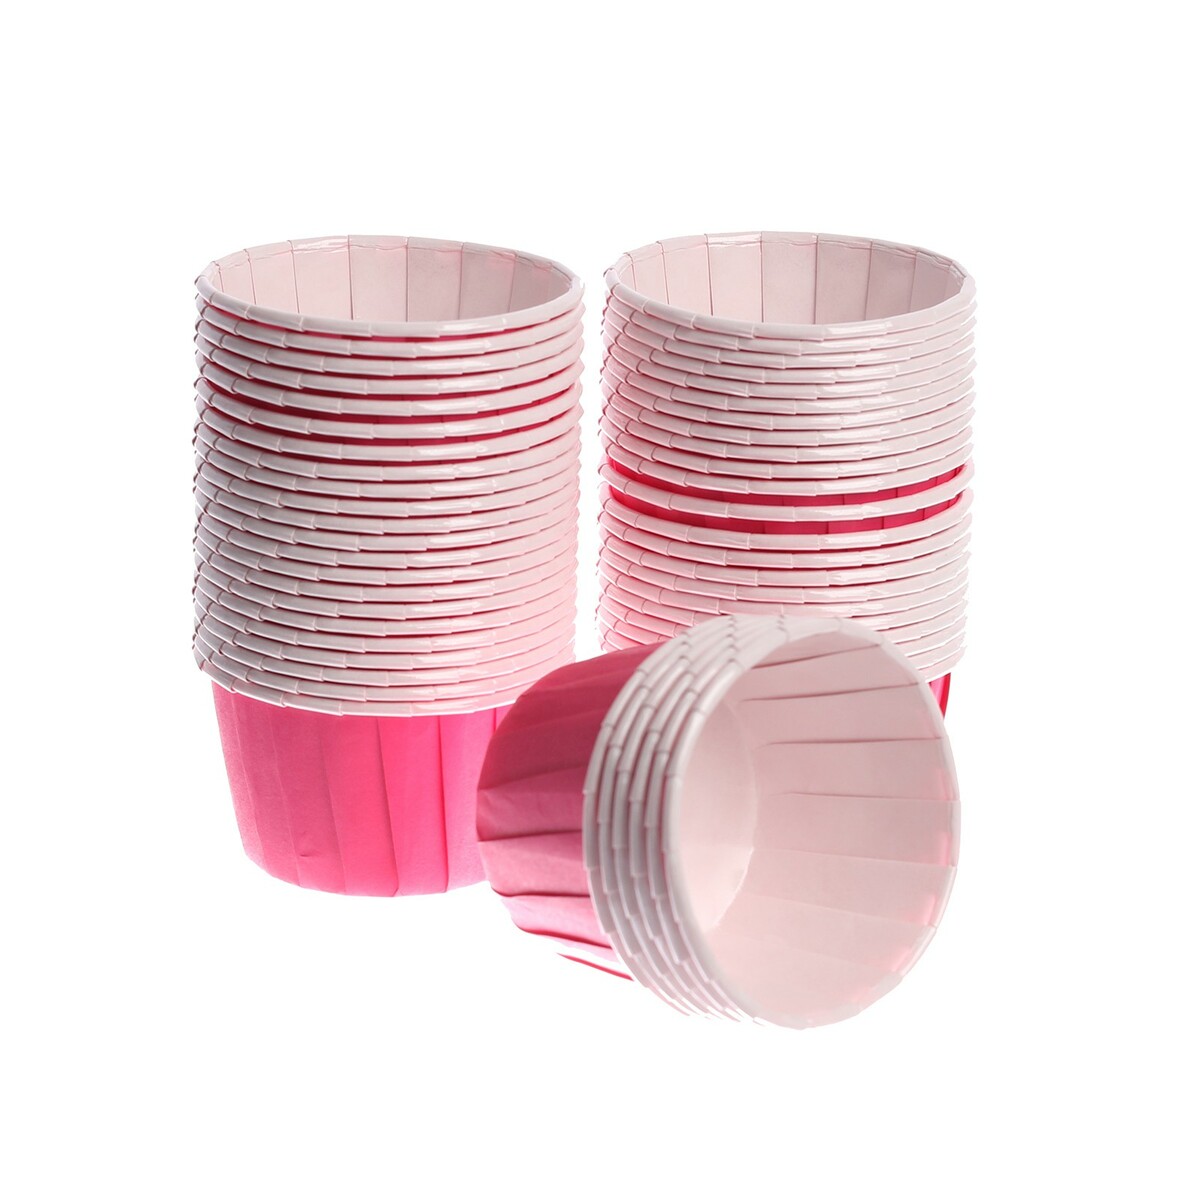 Тарталетка для кексов, набор, 50 шт., цвет розовый набор форм для выпечки кексов круглые силиконовые 6 шт ghidini